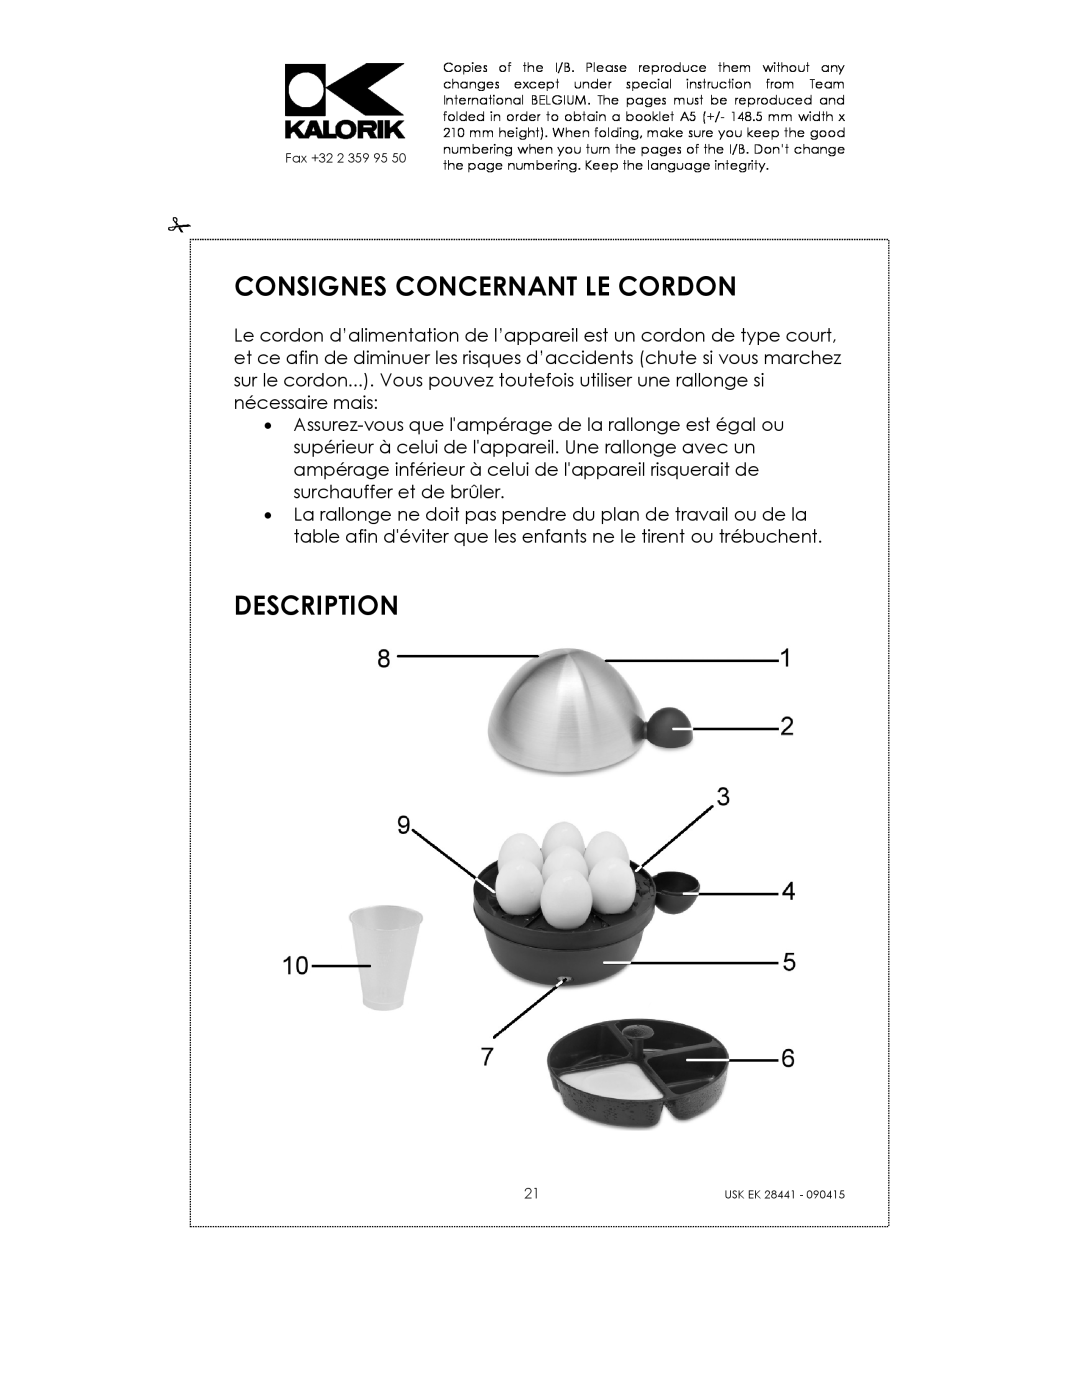 Kalorik USK EK 28441 manual Consignes Concernant Le Cordon, Description 